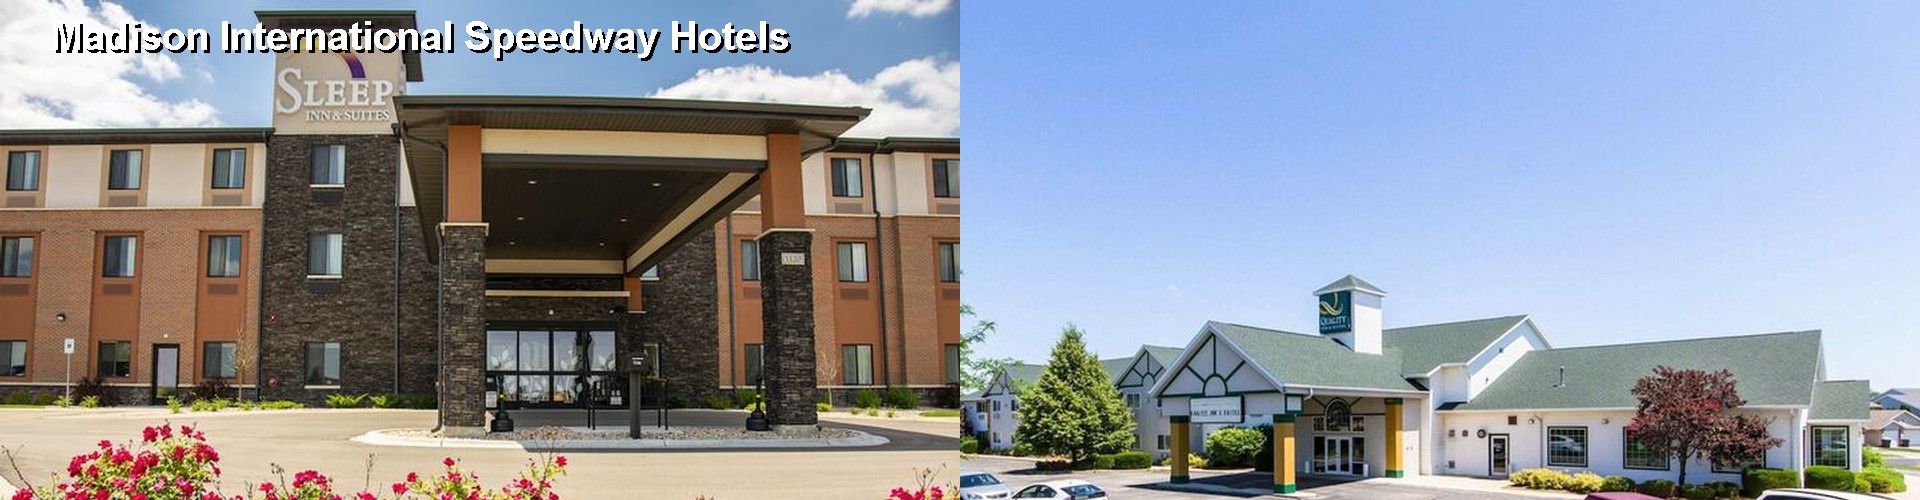 4 Best Hotels near Madison International Speedway